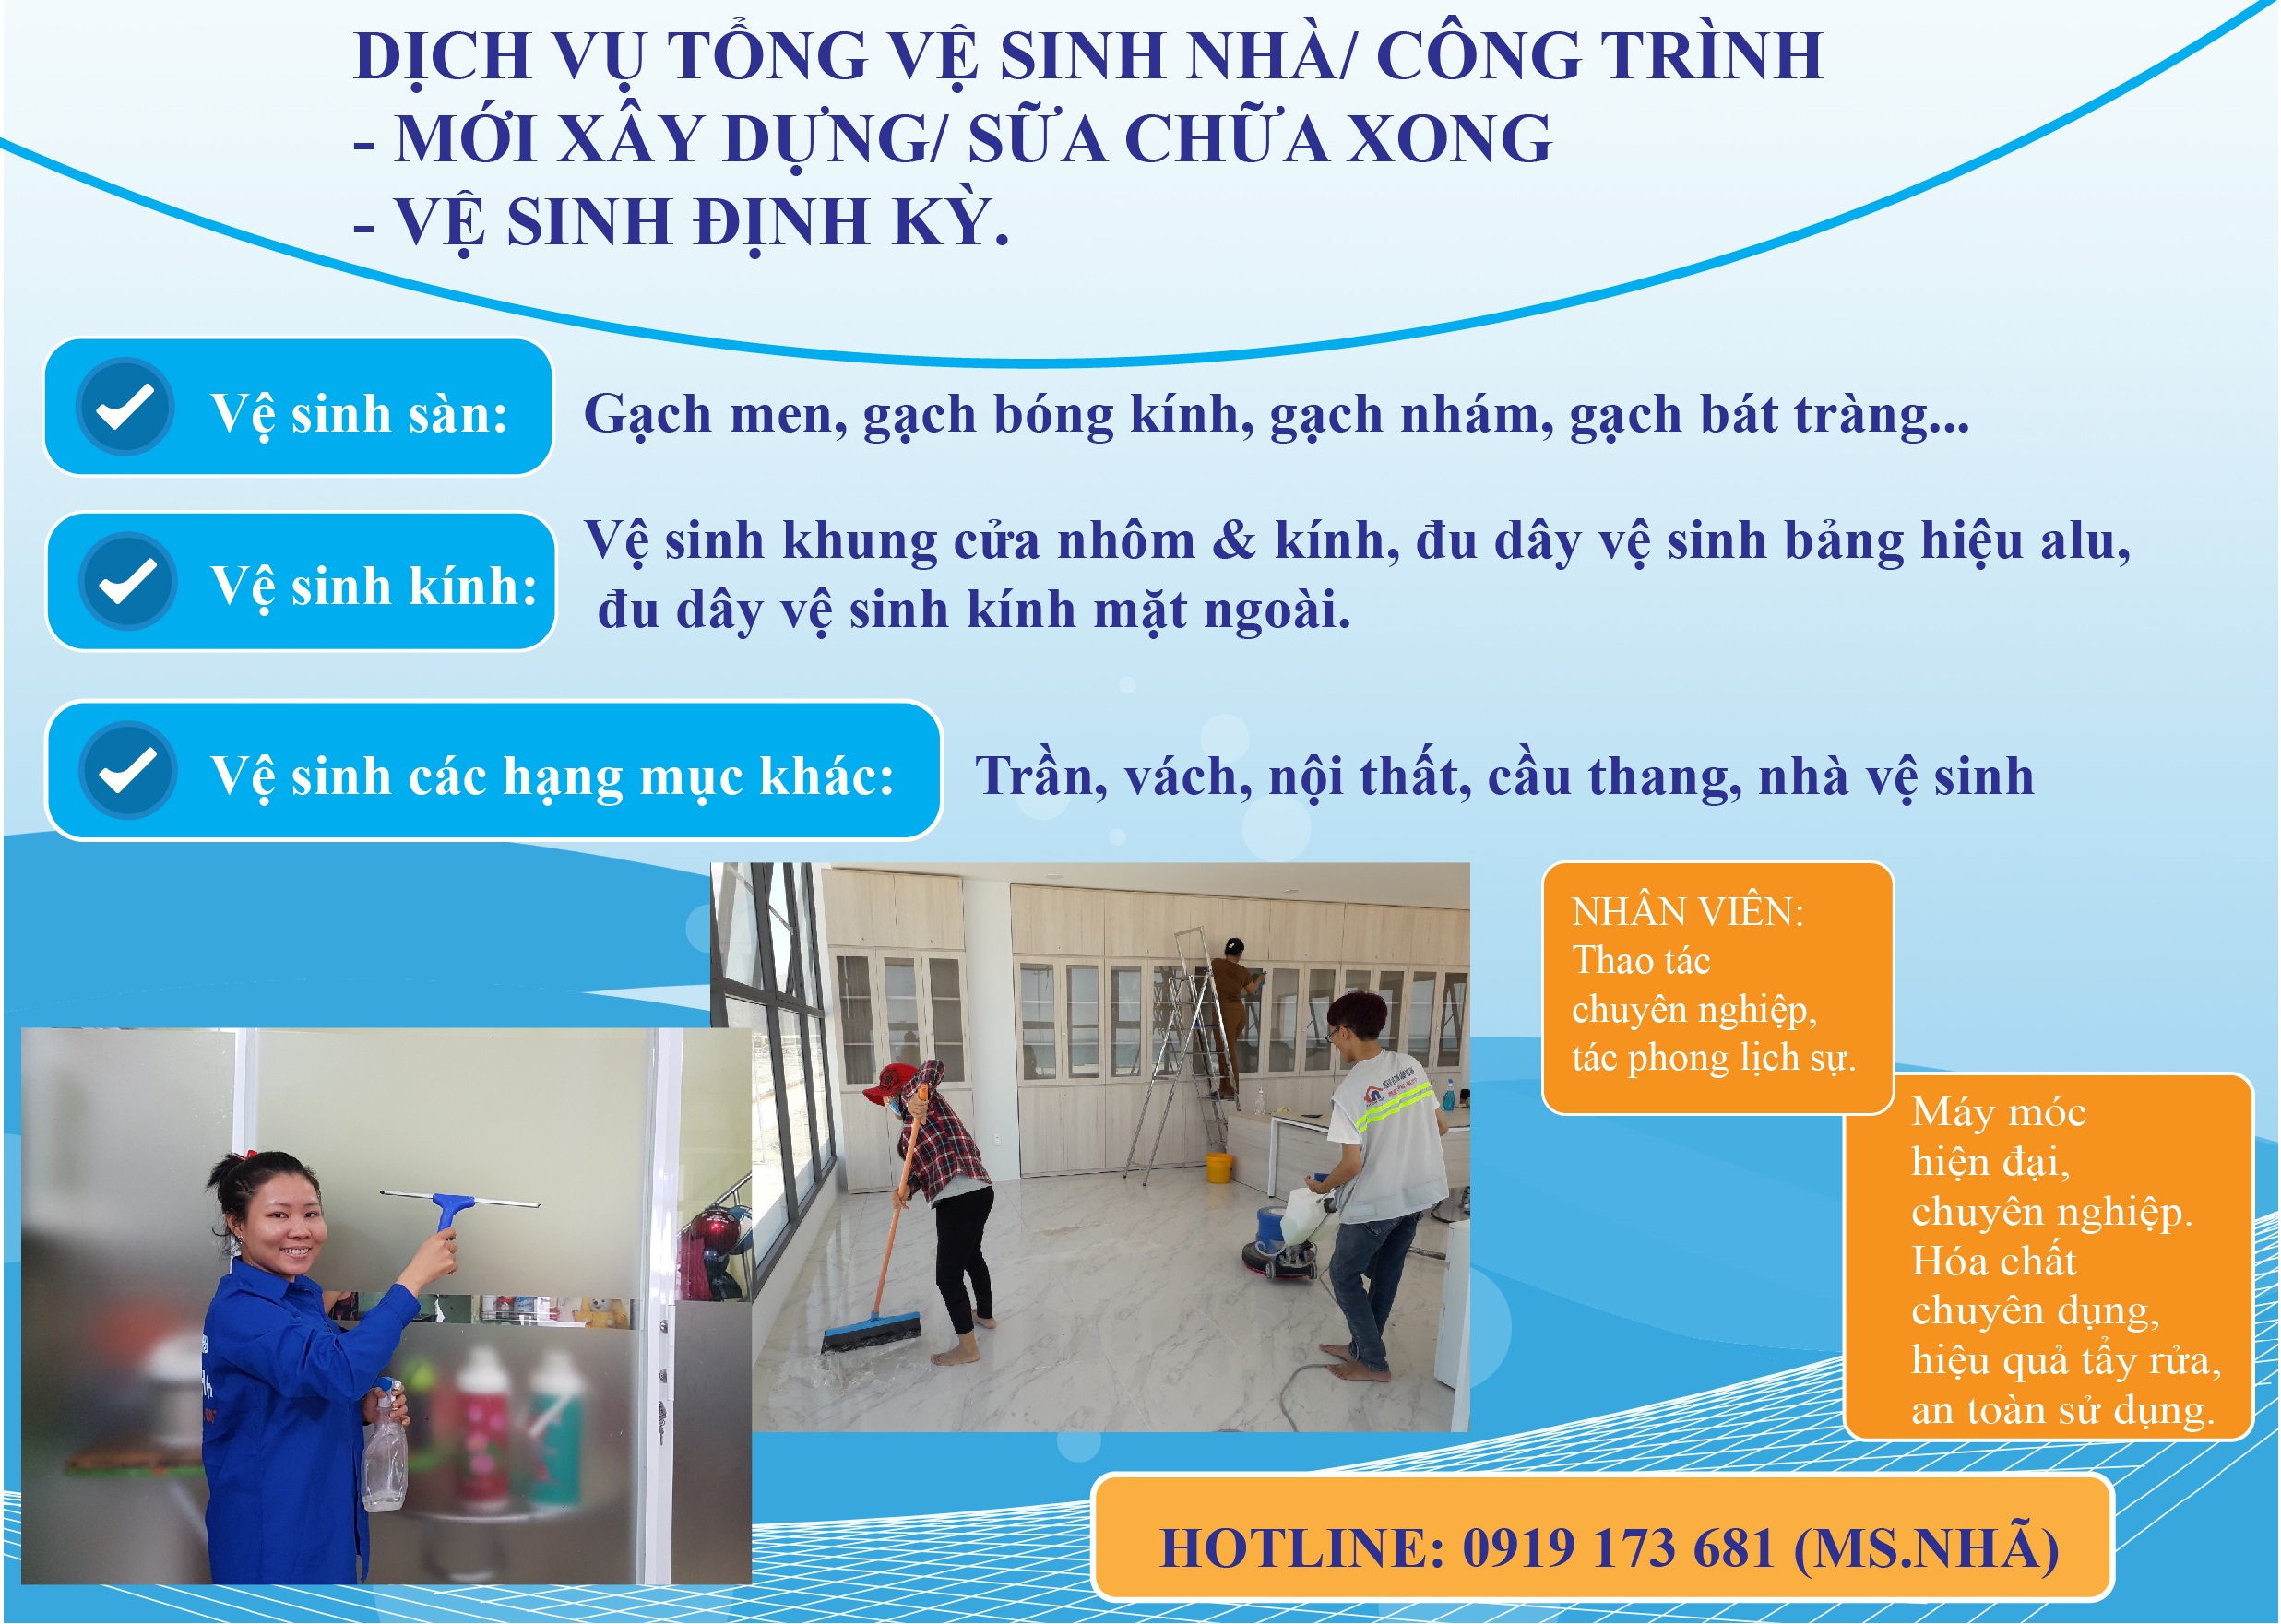 Dịch vụ vệ sinh công nghiệp tại Phan Rang - Ninh Thuận